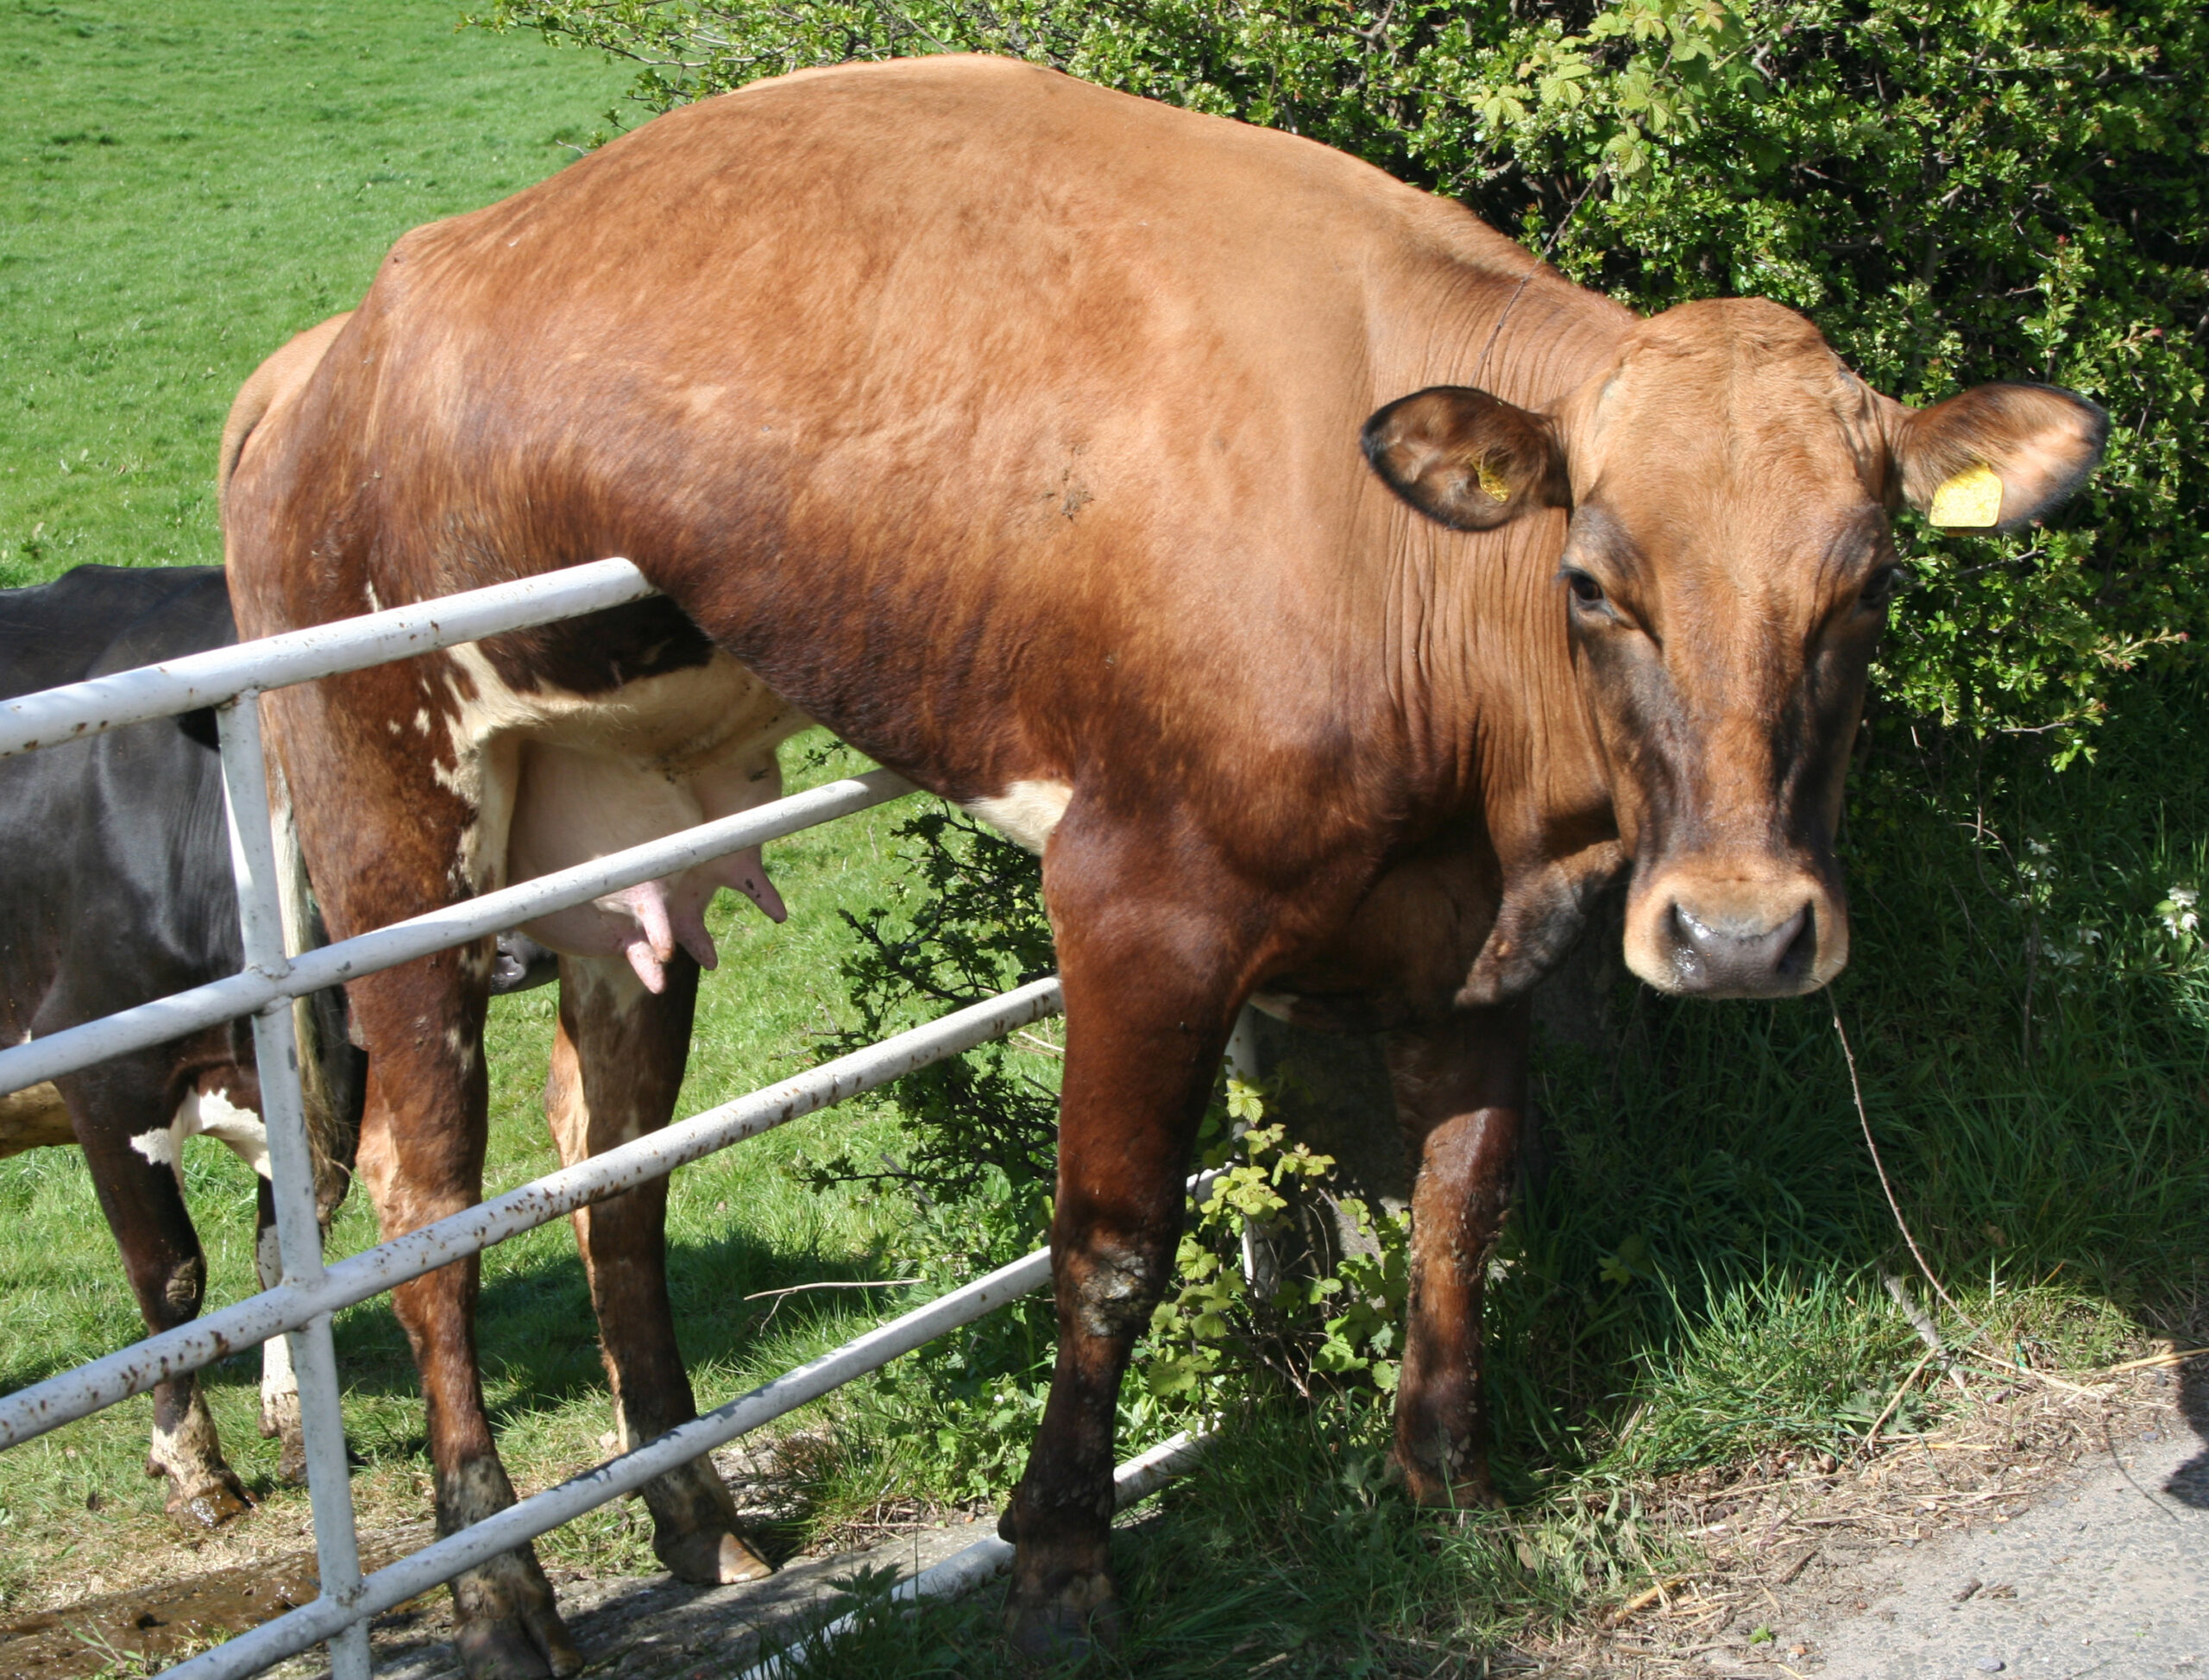 Anhand welcher Anzeichen wird festgestellt, wann eine Kuh nach dem Kalben läufig wird?